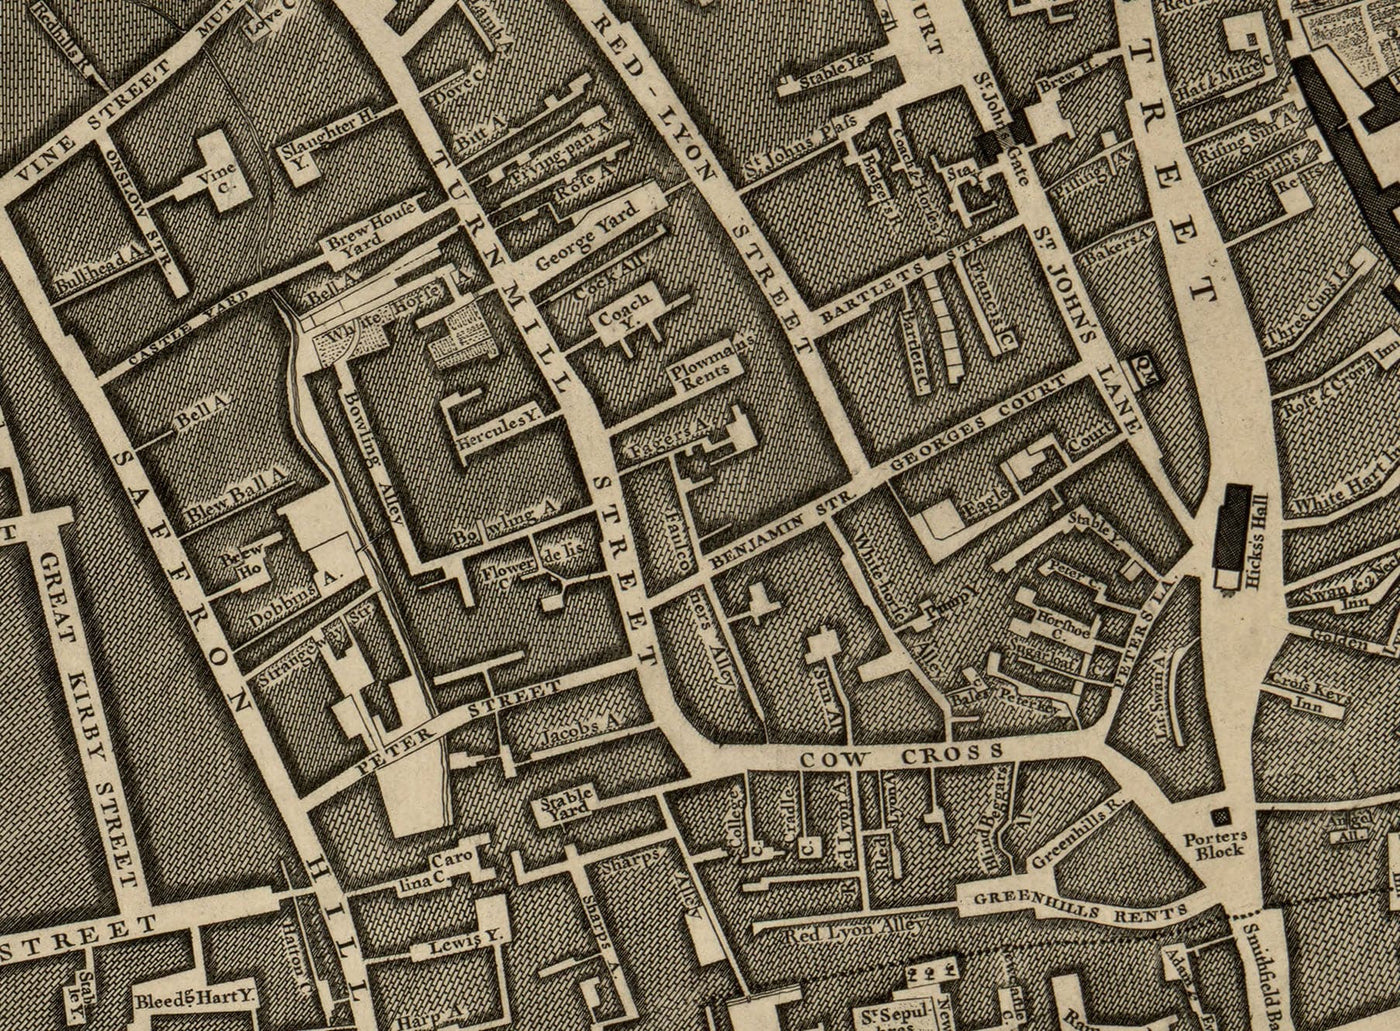 Ancienne carte de Londres, 1746 par John Rocque, D1 - Holborn, Clerkenwell, Farringdon, Barbican, Westminster, Ville de Londres, Marché Smithfield